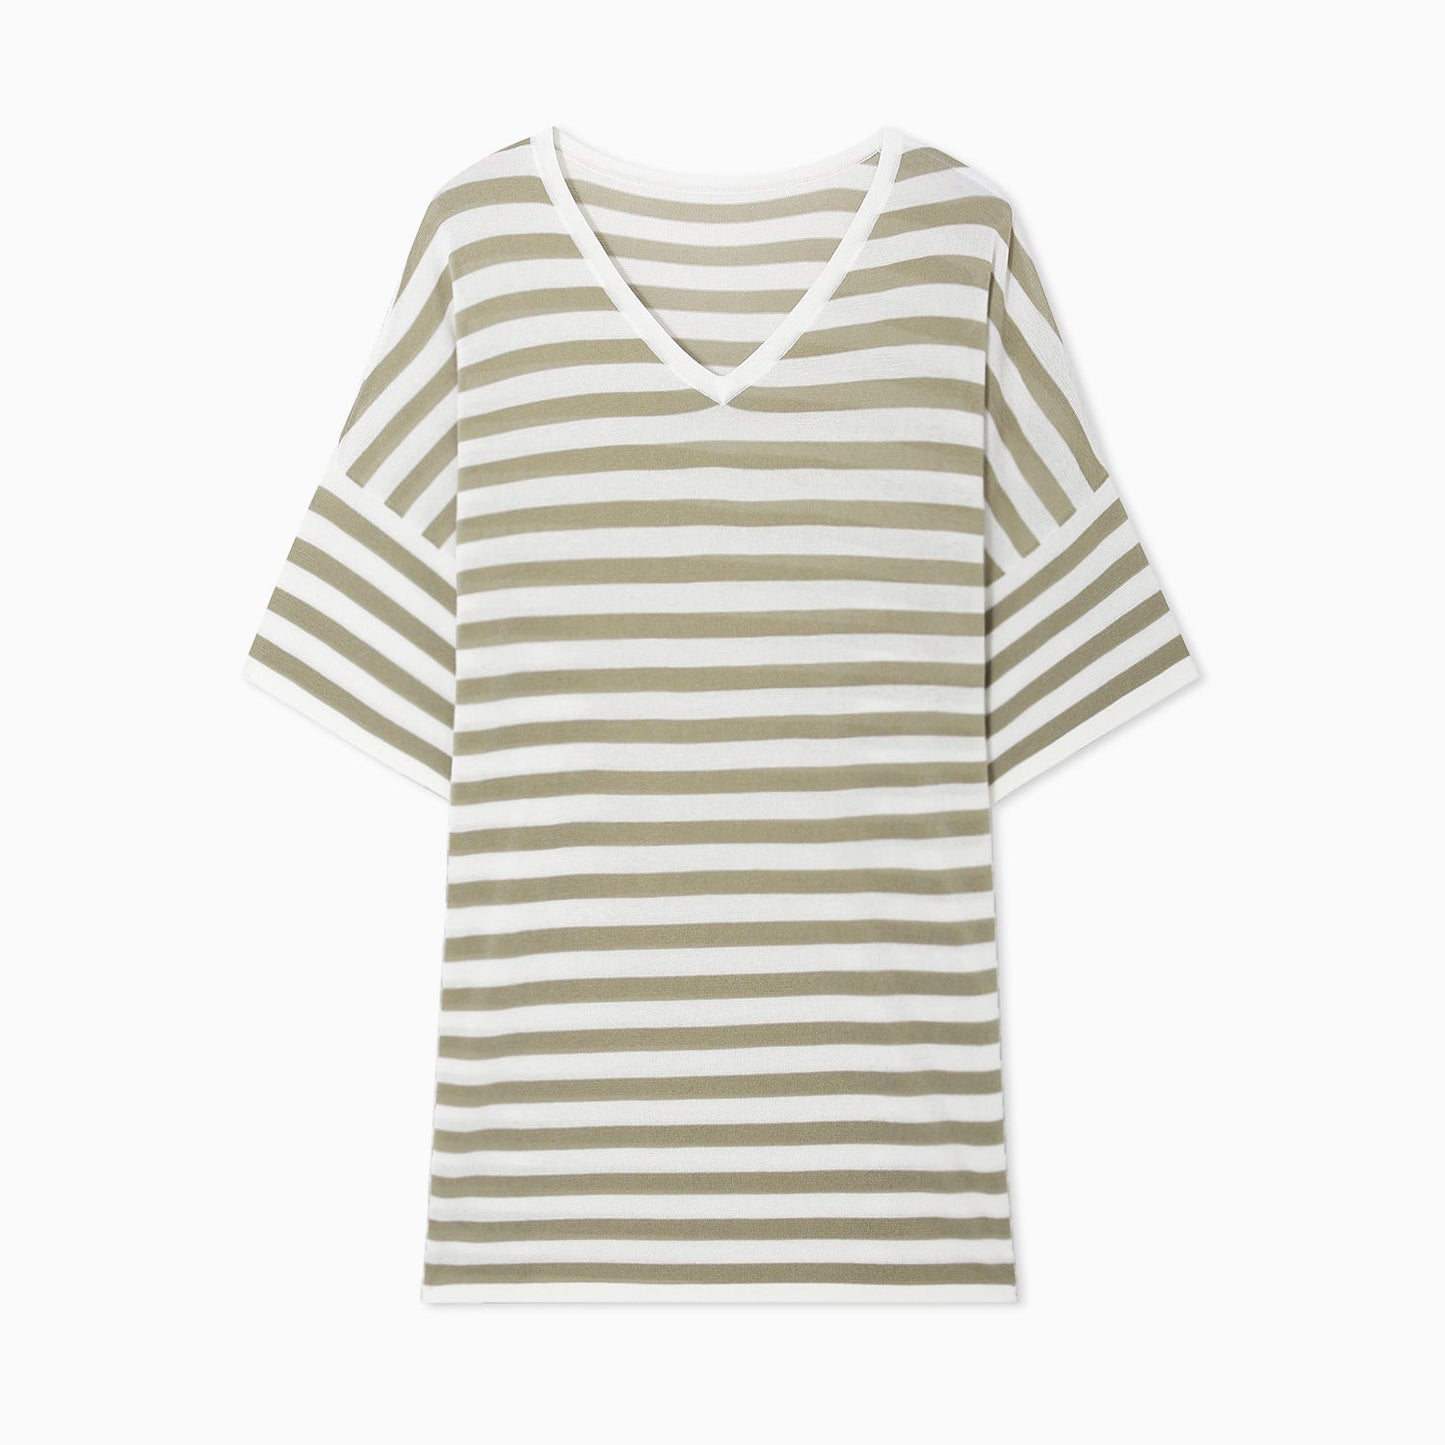 Cotton Striped Knit T-shirt_DI100220